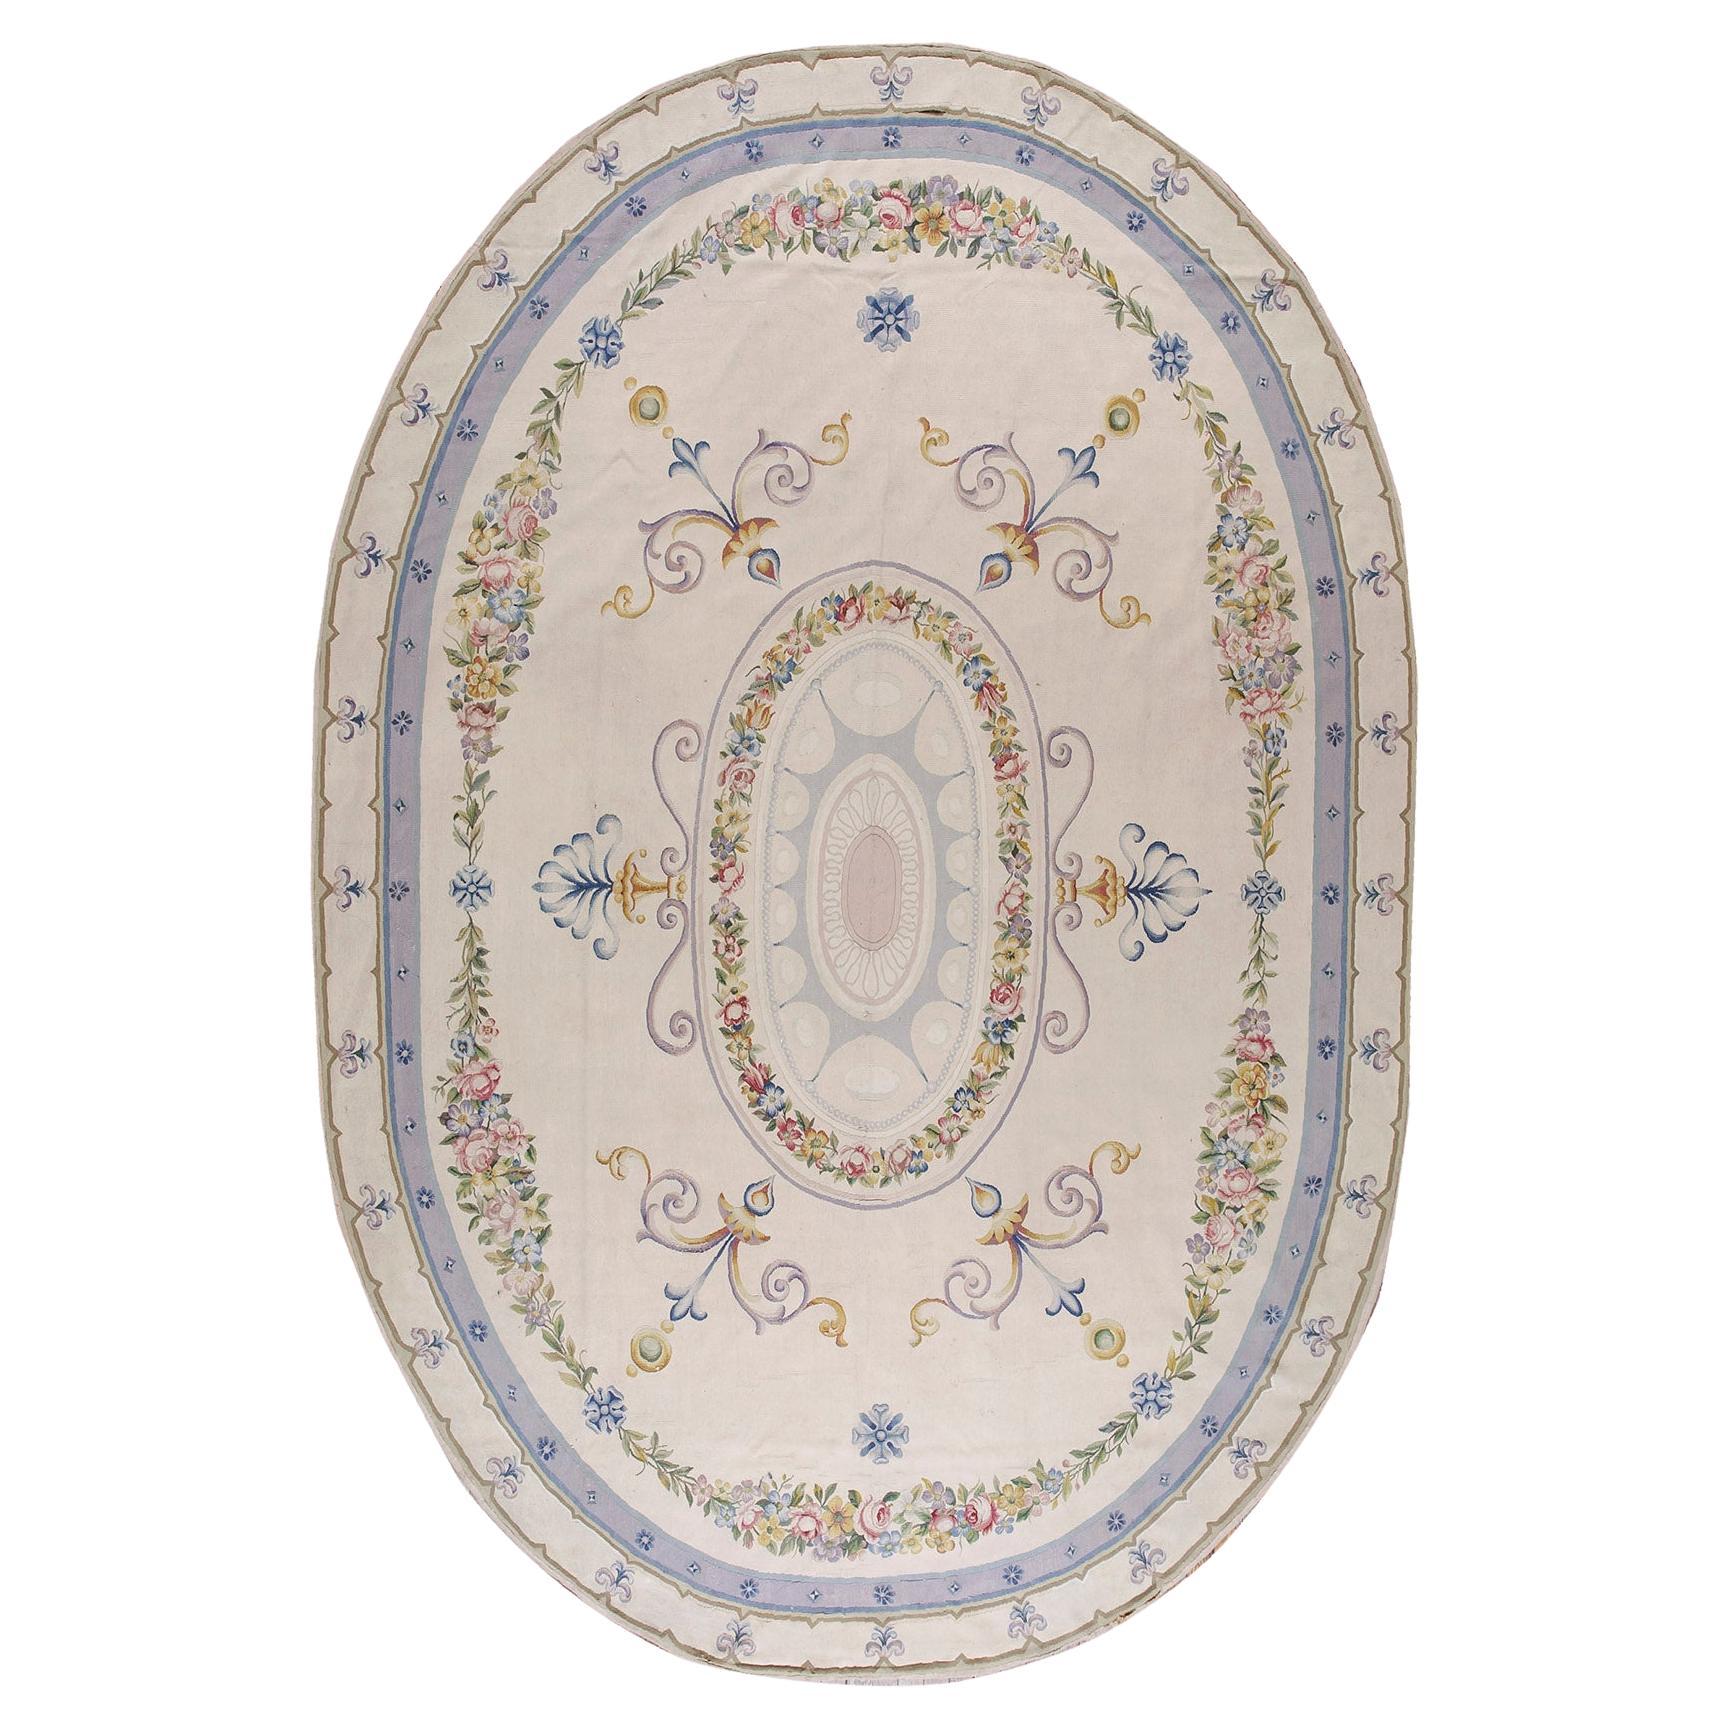 Ovaler französischer neoklassizistischer Aubusson-Teppich des späten 19. Jahrhunderts (8'8"x11' - 265x335)